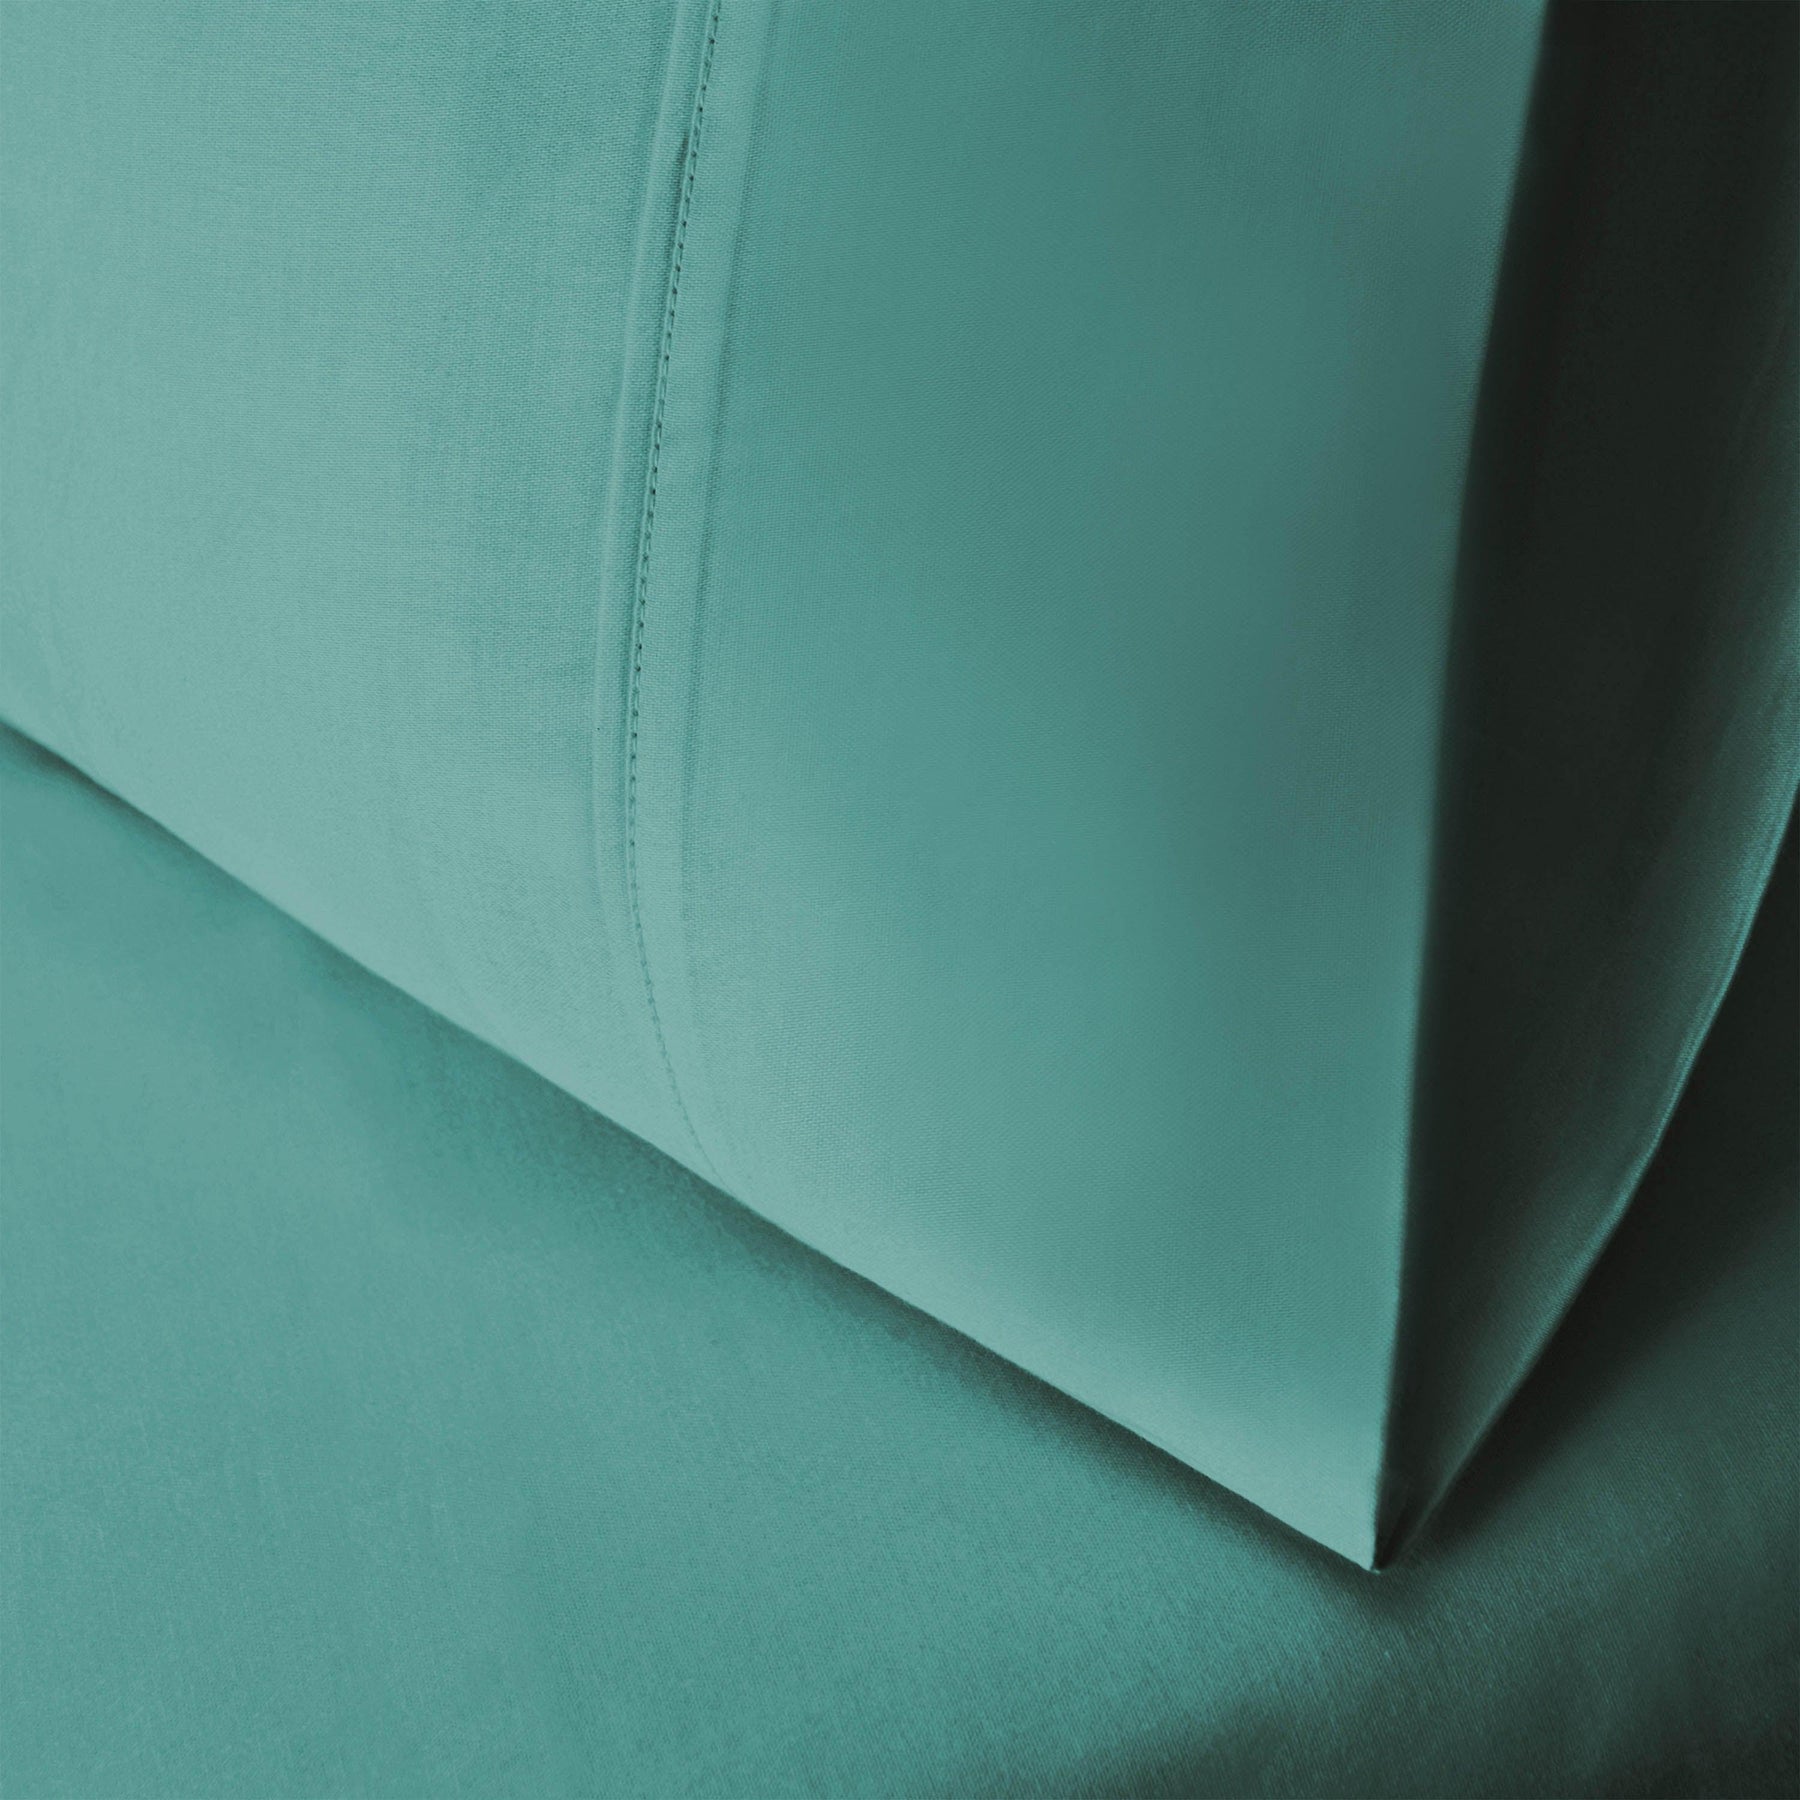  Wrinkle Resistant Egyptian Cotton 2-Piece Pillowcase Set -  Teal